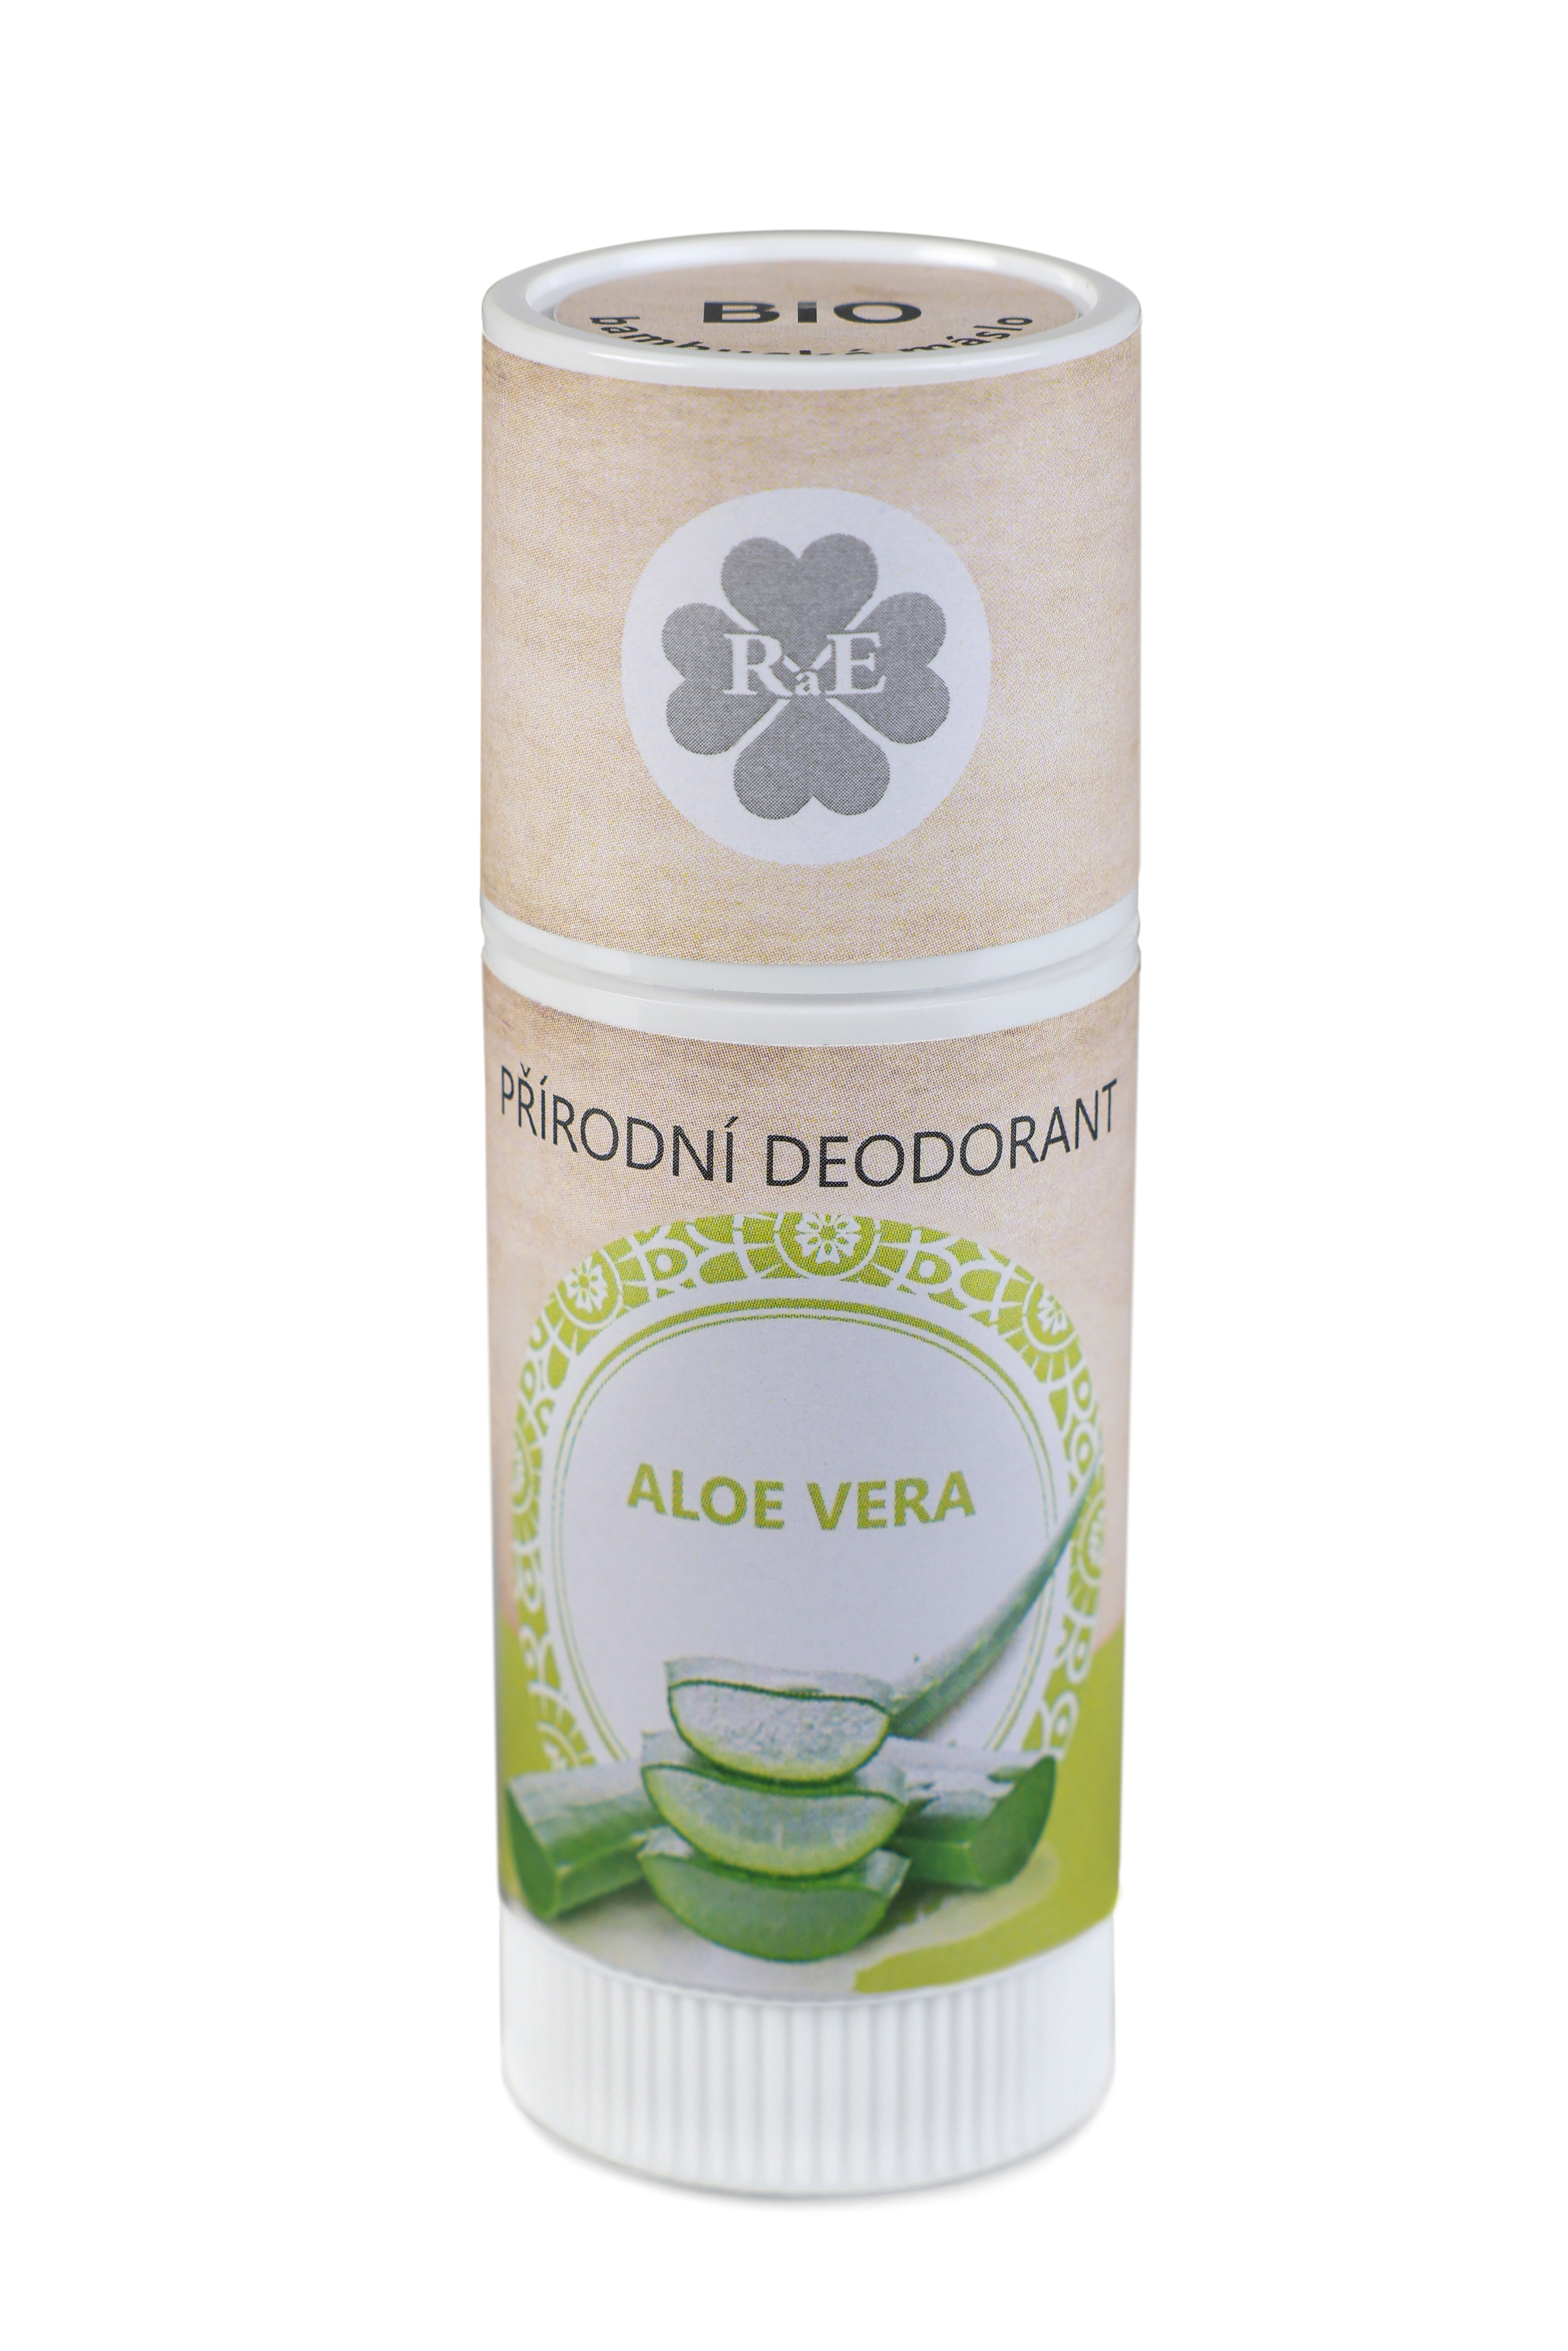 RaE Přírodní deodorant Aloe vera tuba 25ml